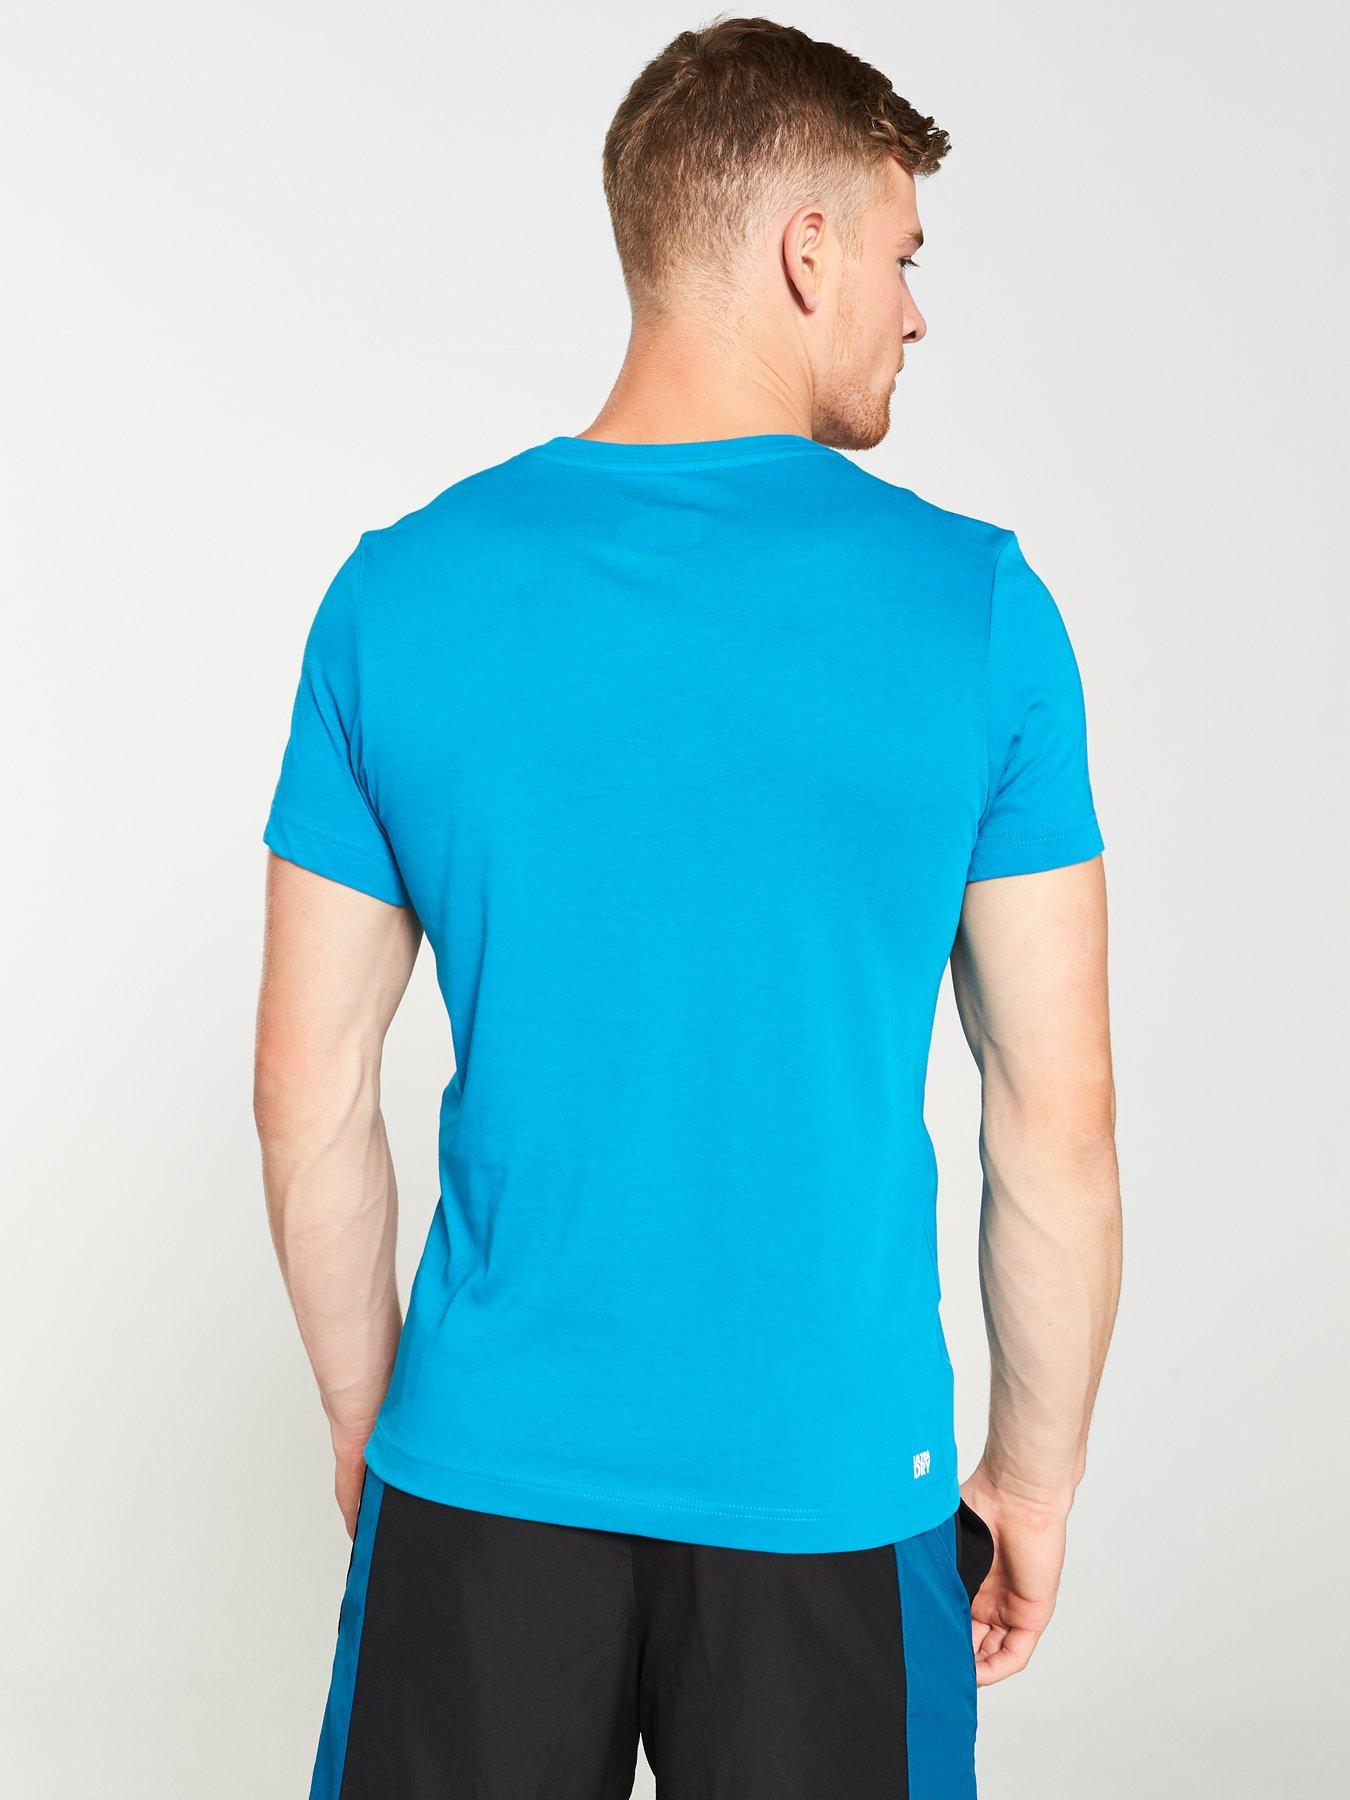 Lacoste Sport Big Croc Logo T Shirt Blue Littlewoodsireland Ie - 728 x 90 14 t shirt ad roblox